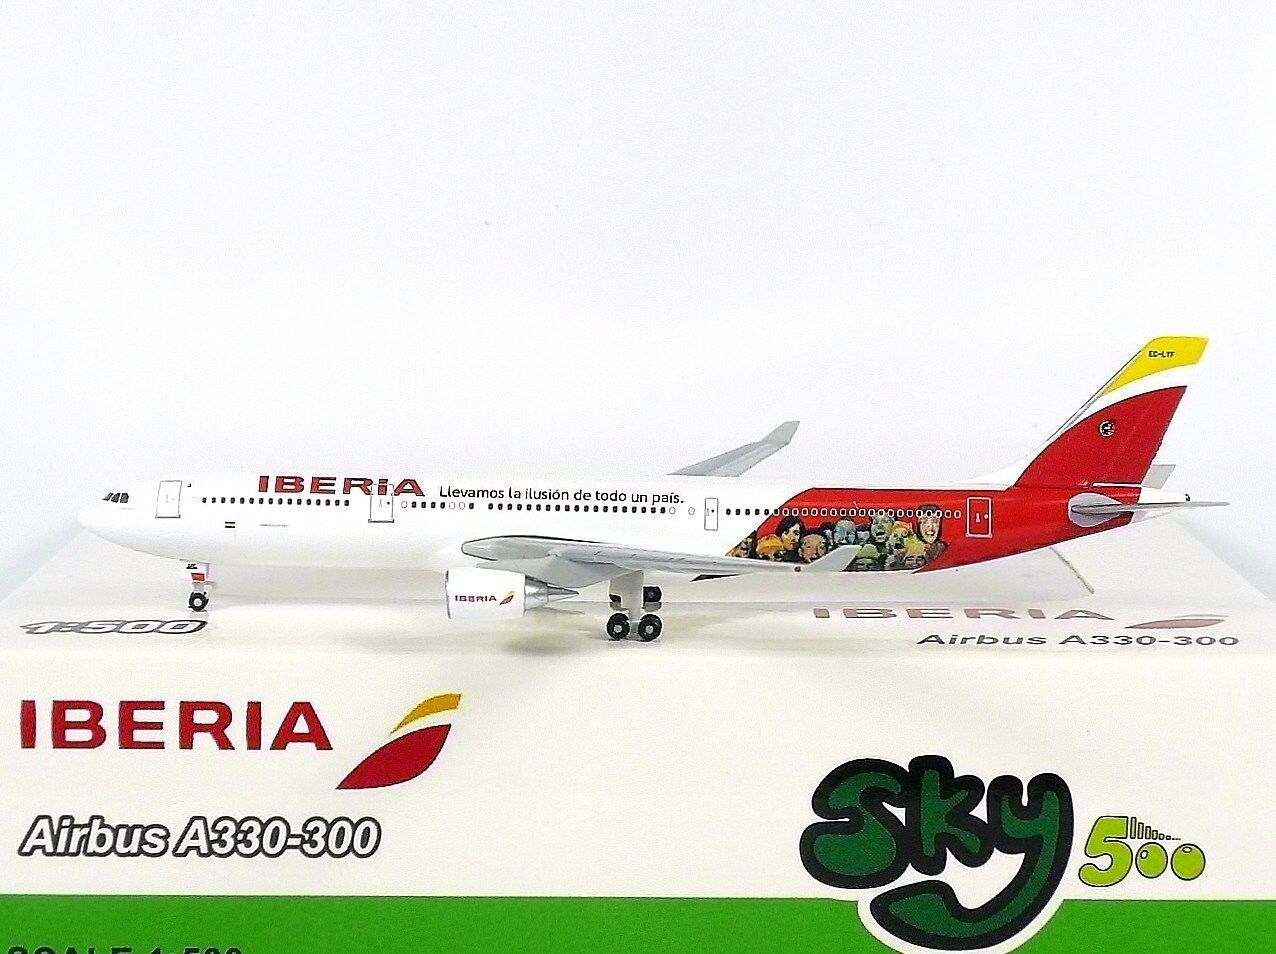 SKY500 Iberia Airbus A330-300 1:500 Special Livery 2014 Reg. EC-LYF (0801IB)